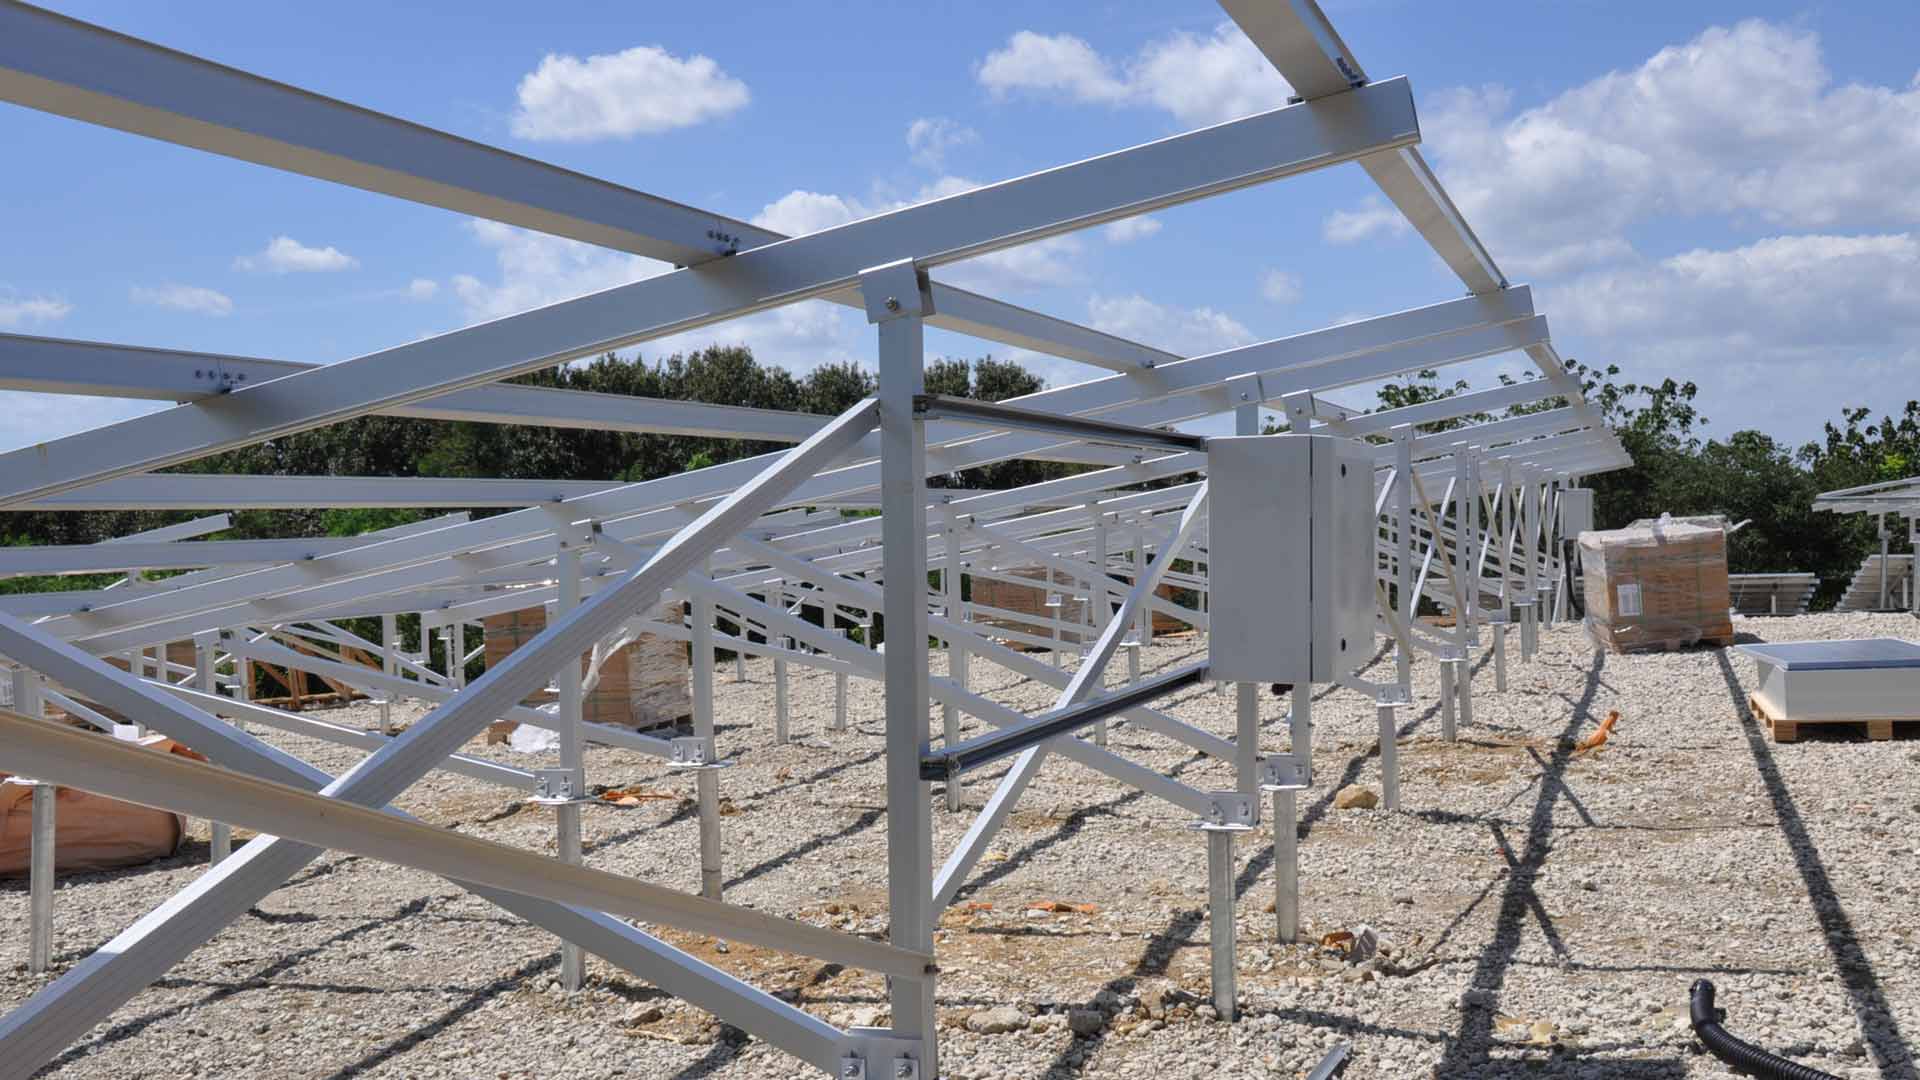 Progetto di terreno solare, vite di terra come fondazione, con staffe in alluminio.